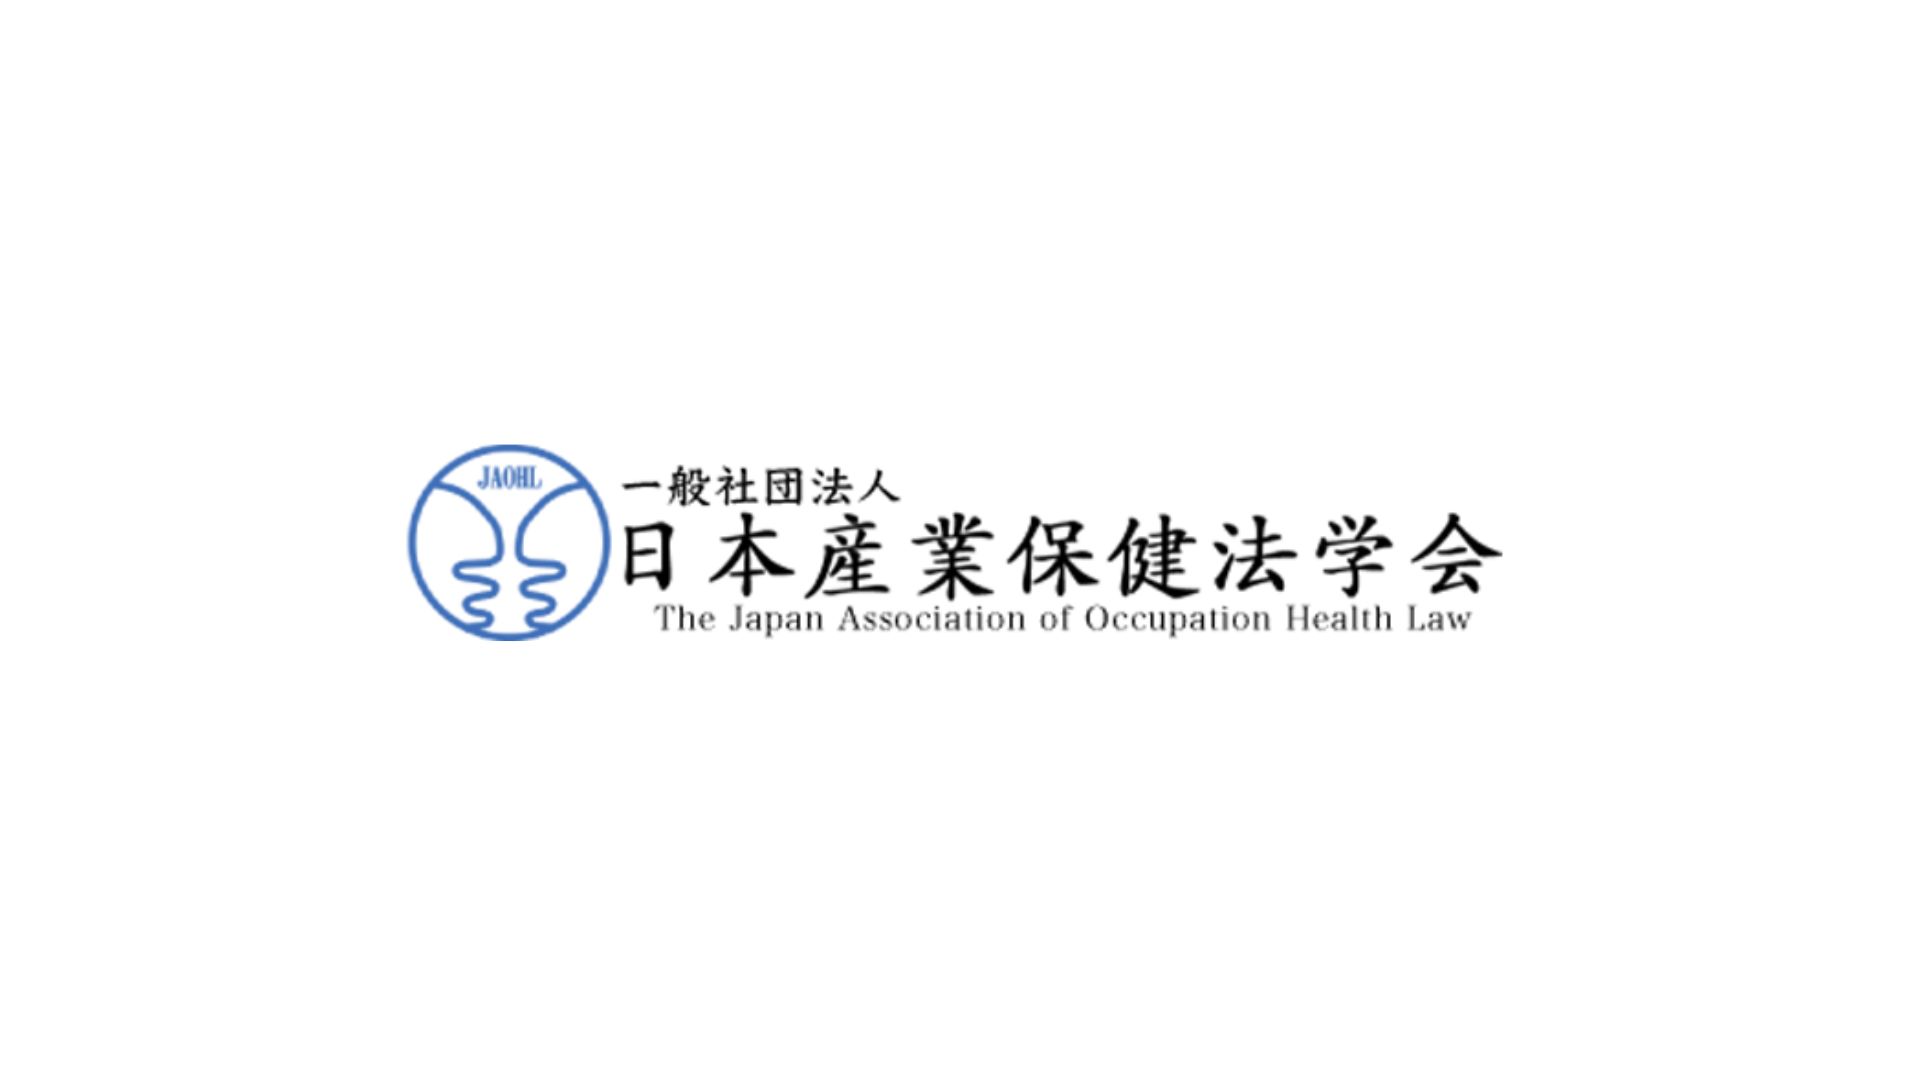 【学会登壇】日本産業保健法学会にて株式会社パパゲーノ代表取締役の田中が登壇しました